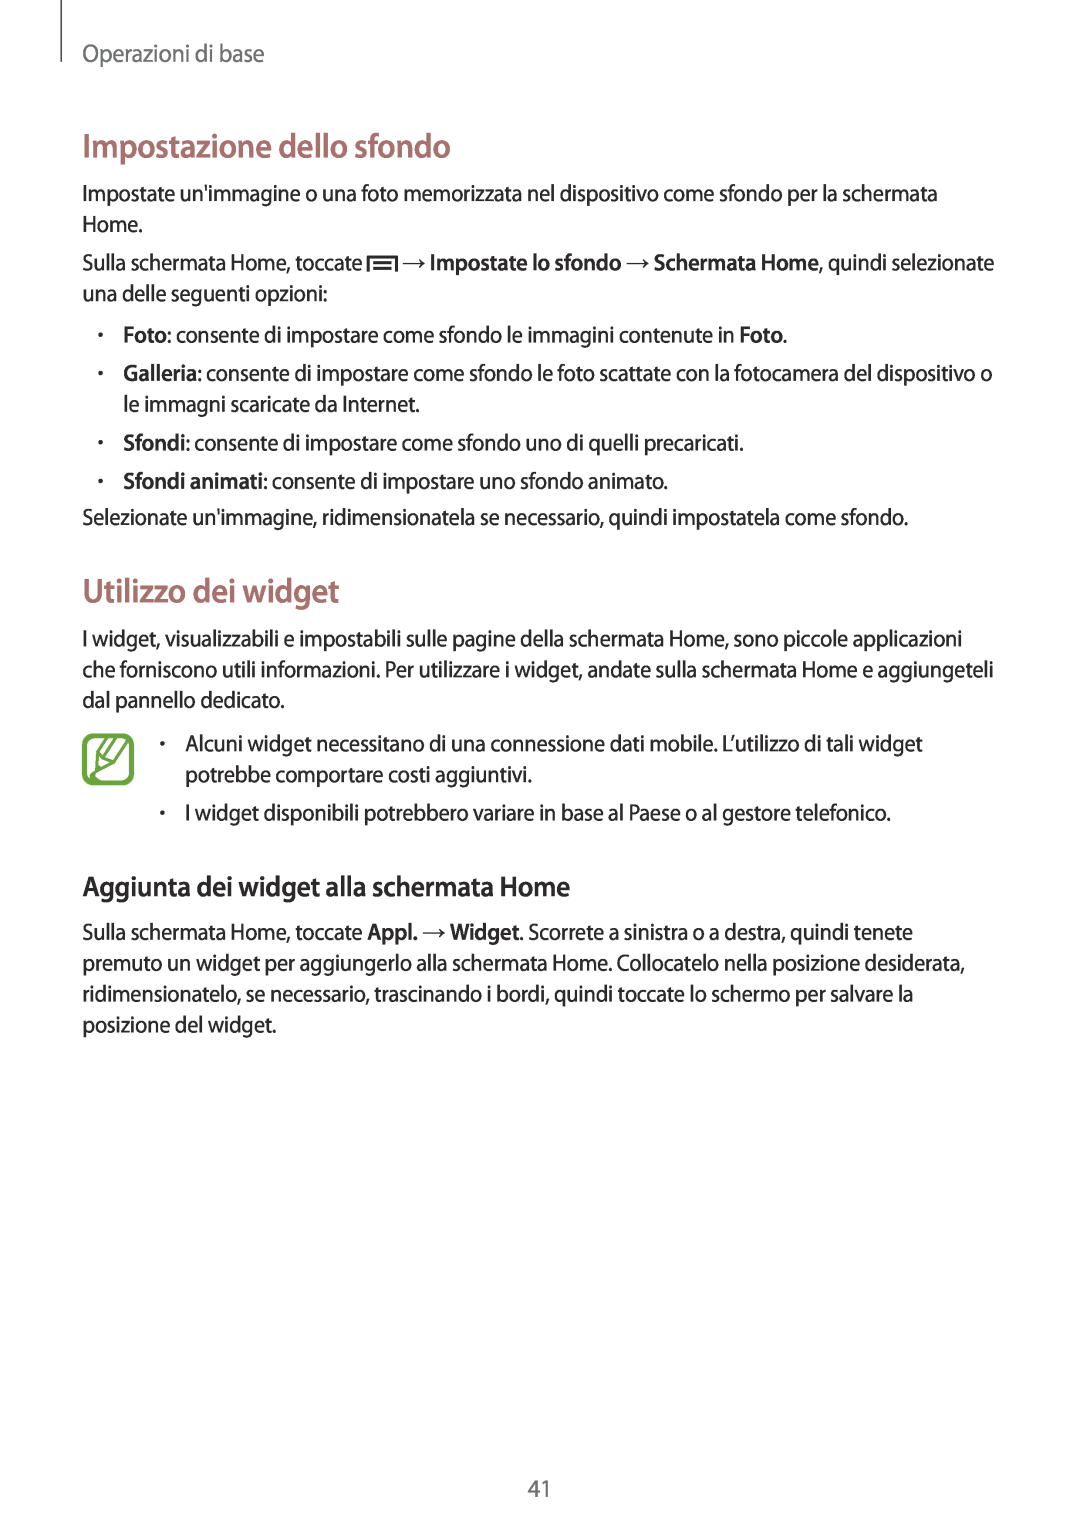 Samsung GT-N7100RWDTIM manual Impostazione dello sfondo, Utilizzo dei widget, Aggiunta dei widget alla schermata Home 